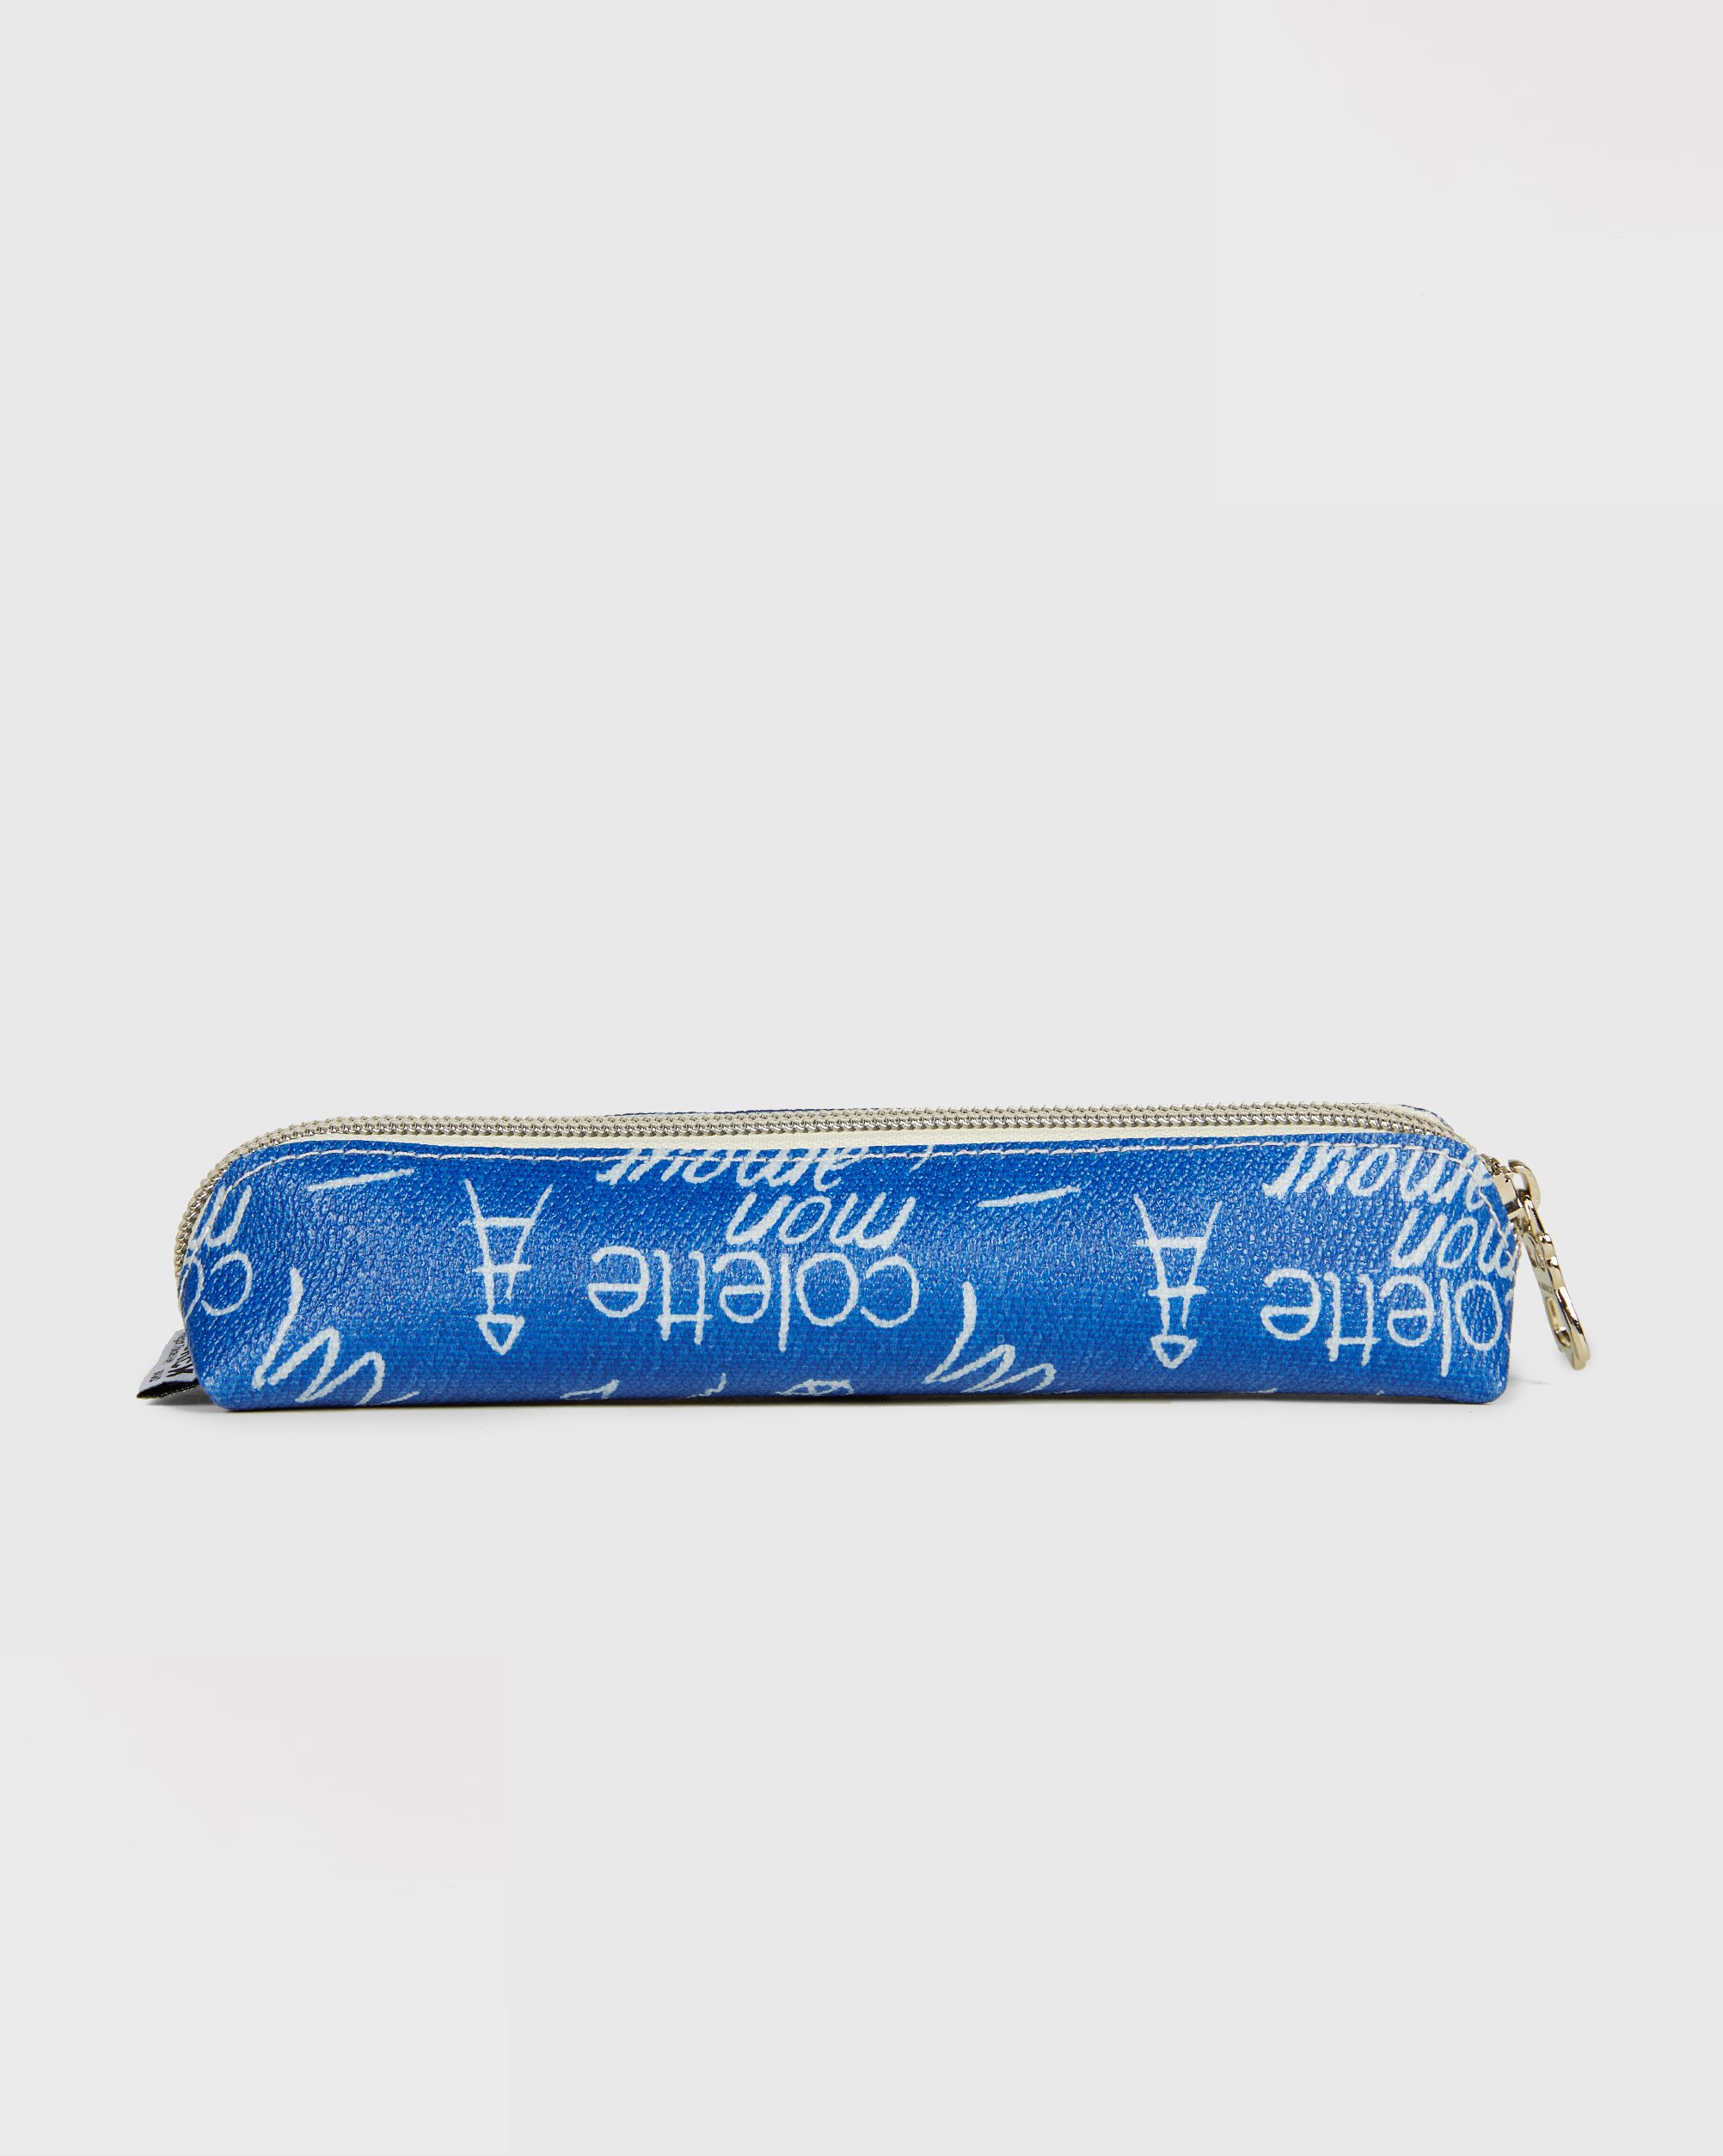 Colette Mon Amour - FABRICK Pen Case Blue - Lifestyle - Blue - Image 2